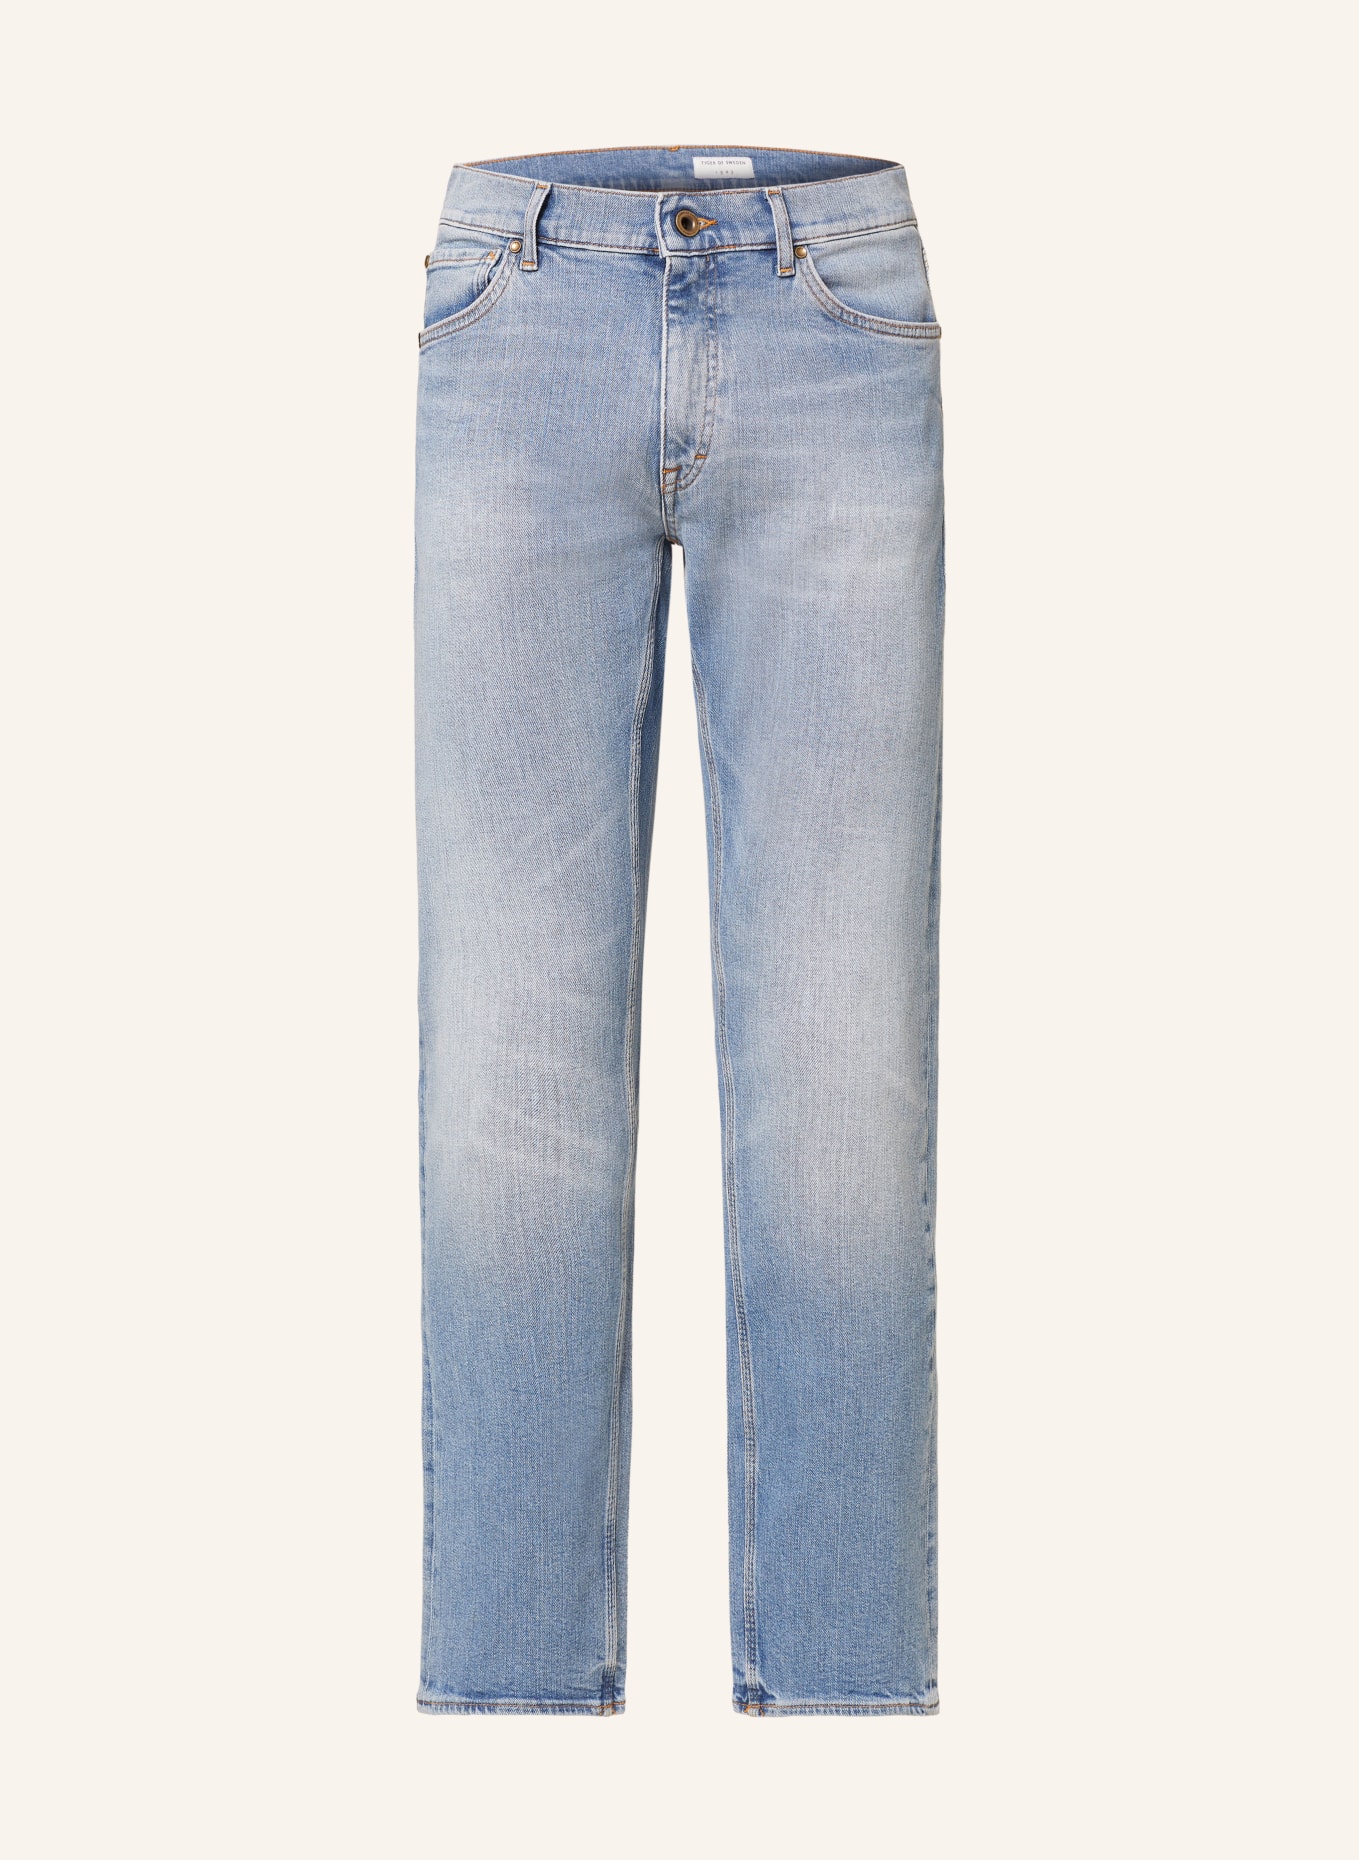 TIGER OF SWEDEN Jeans DES Slim Fit, Farbe: 200 Light blue (Bild 1)